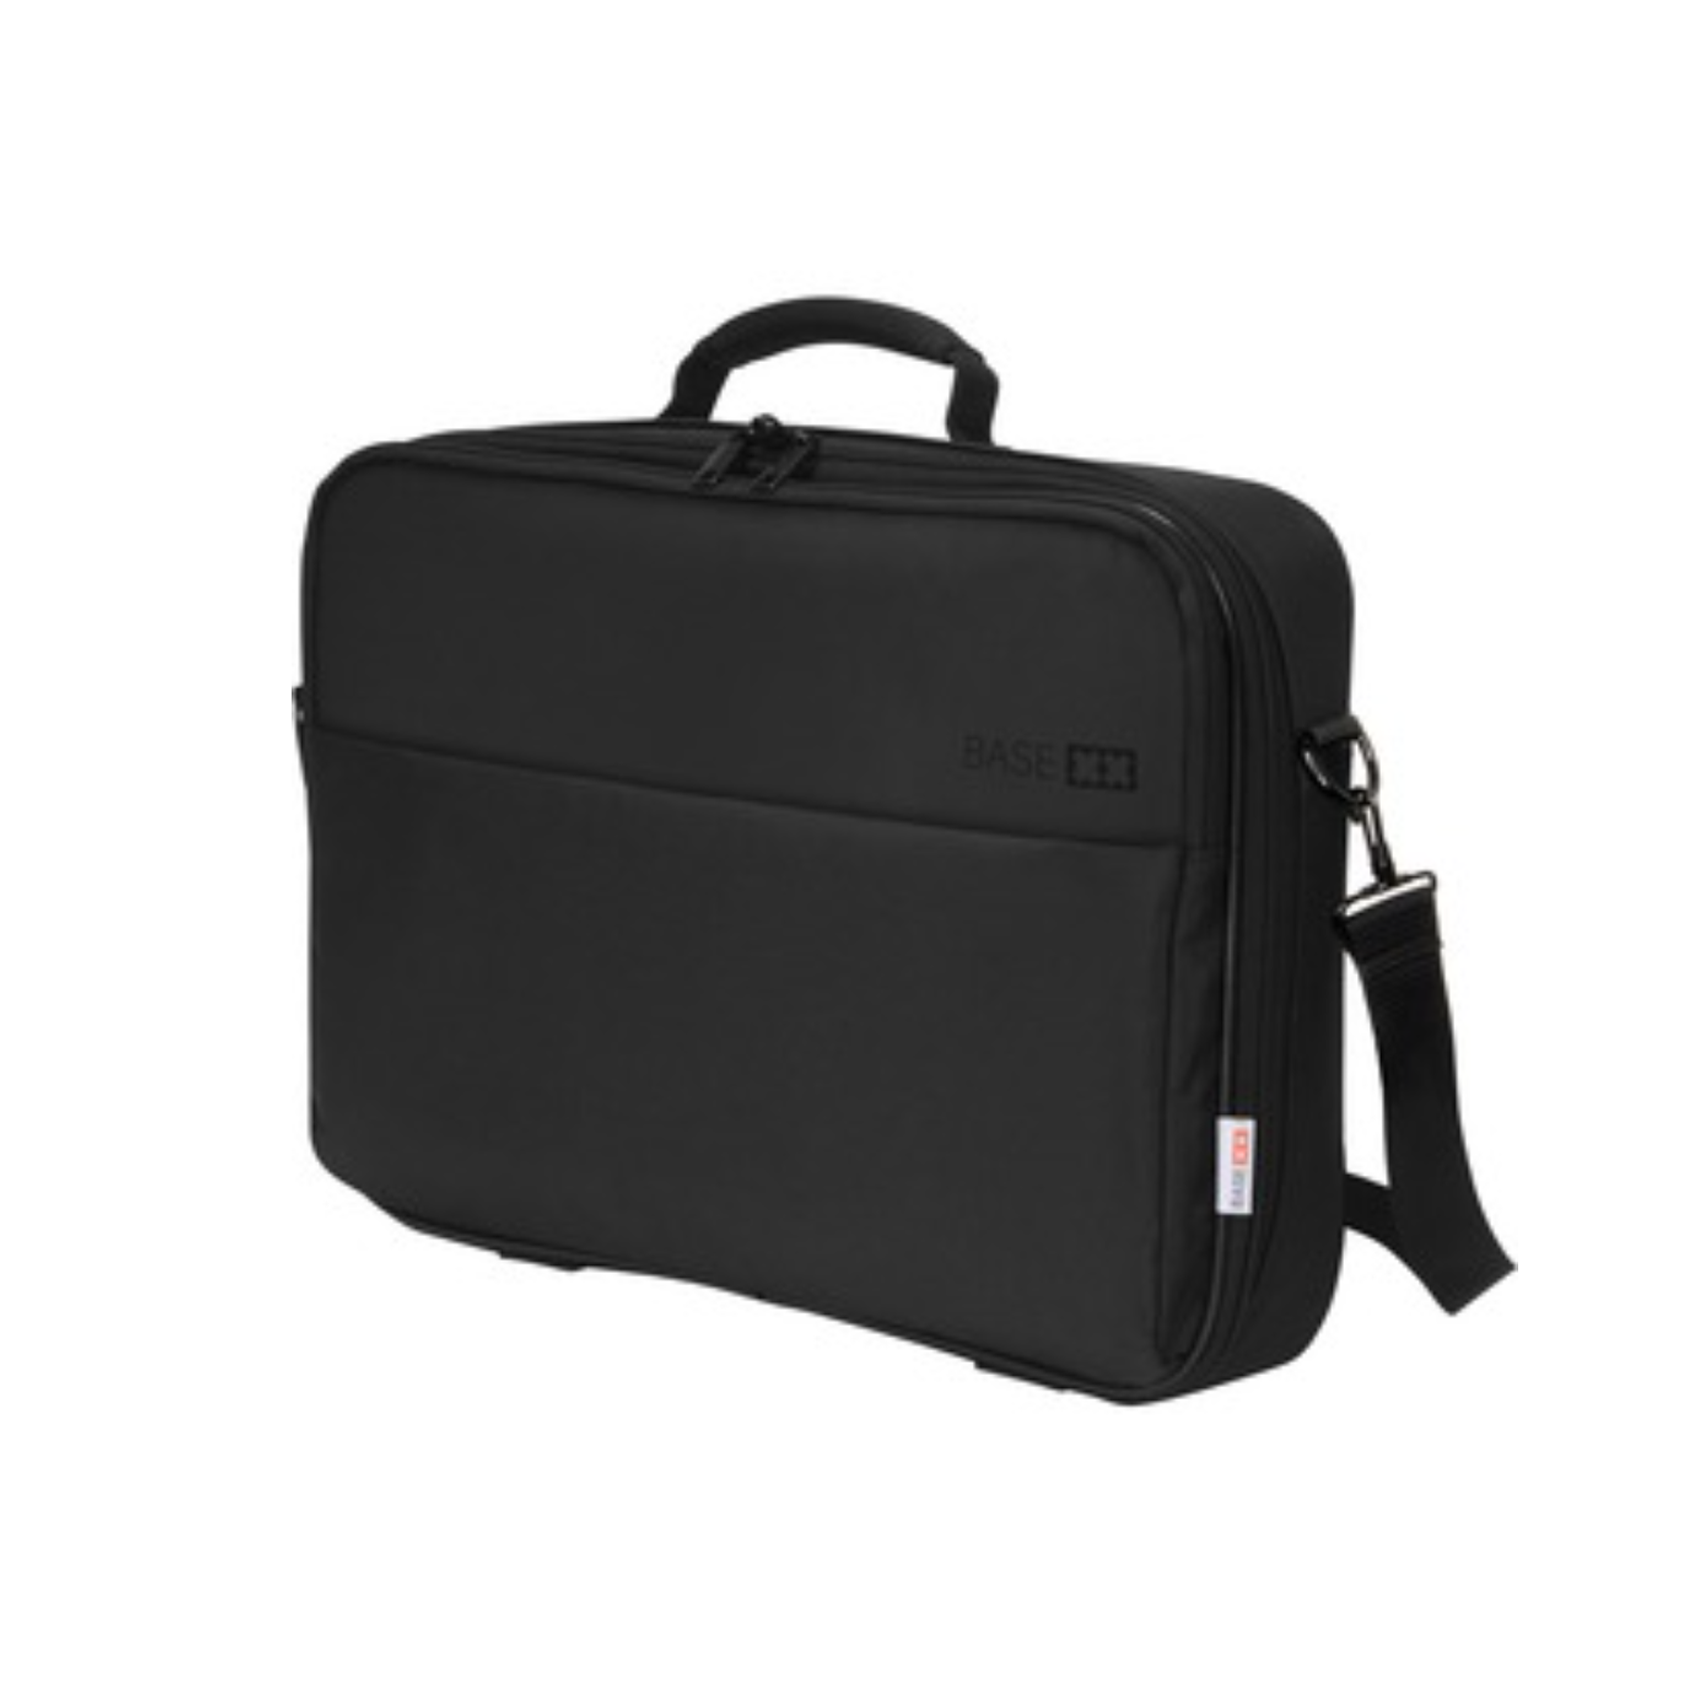 15-17.3″ Dicota BASE XX Laptop Bag – Black - PC TECHNICIANS